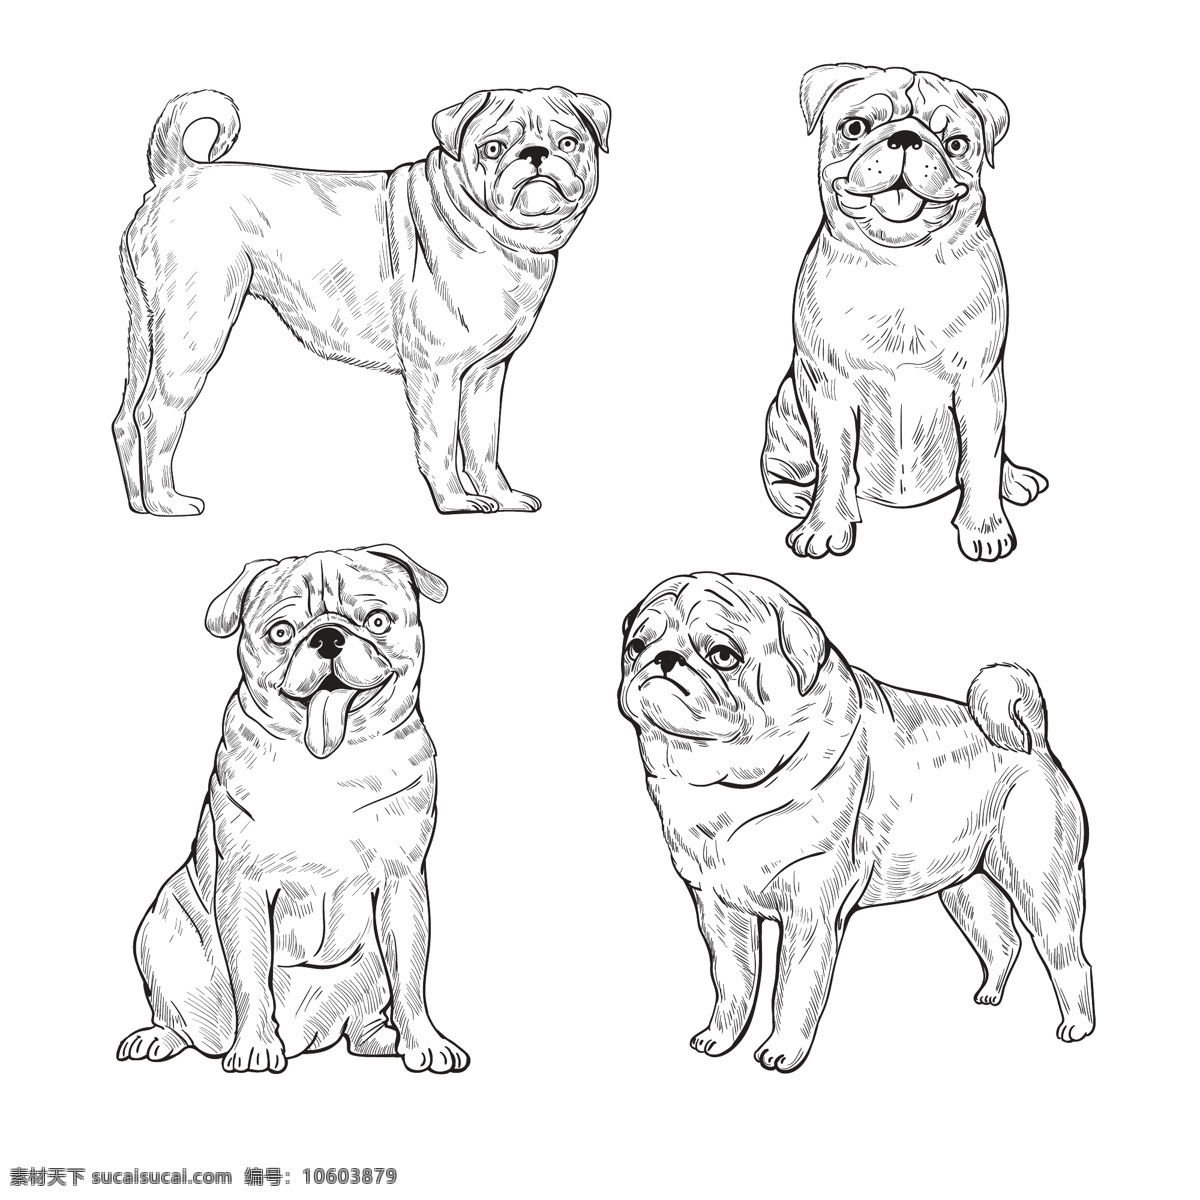 宠物 动物 狗 卡通 卡通狗 可爱 犬 手绘 素描狗狗 素描